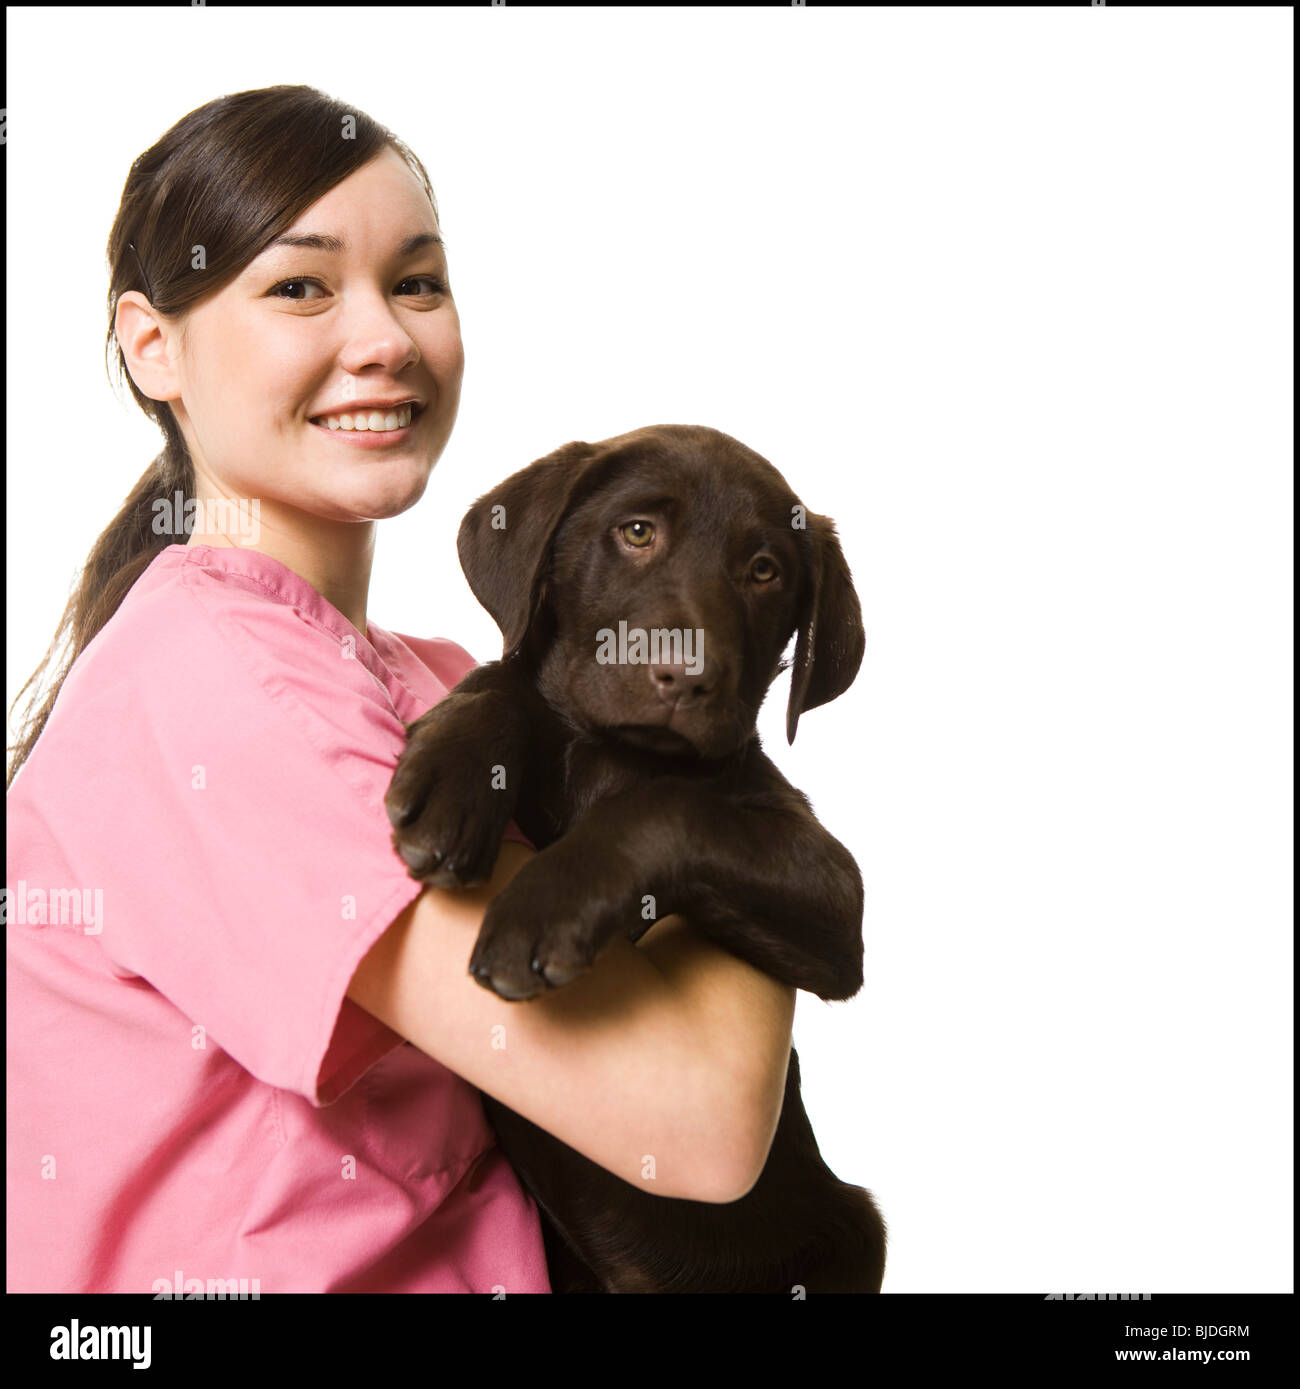 veterinary technician Stock Photo